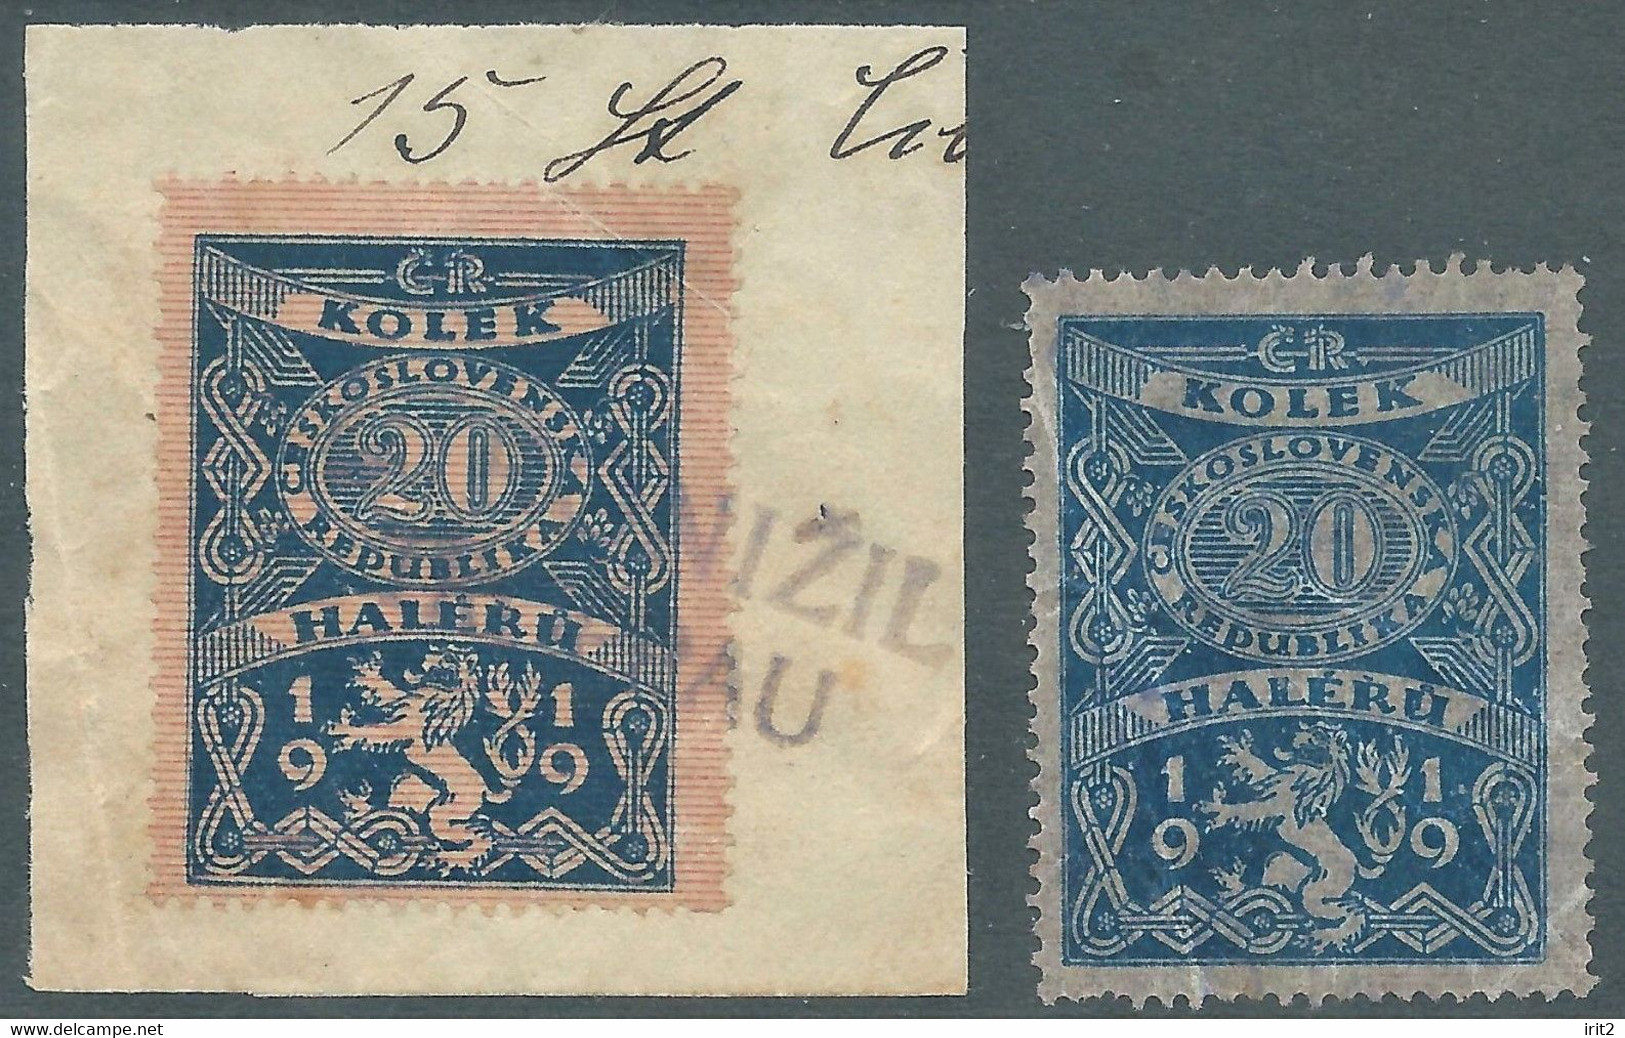 Czechoslovakia - CECOSLOVACCHIA.1919 Revenue Stamps Tax Fiscal,Kolek 20 Haleru,Used - Timbres De Service